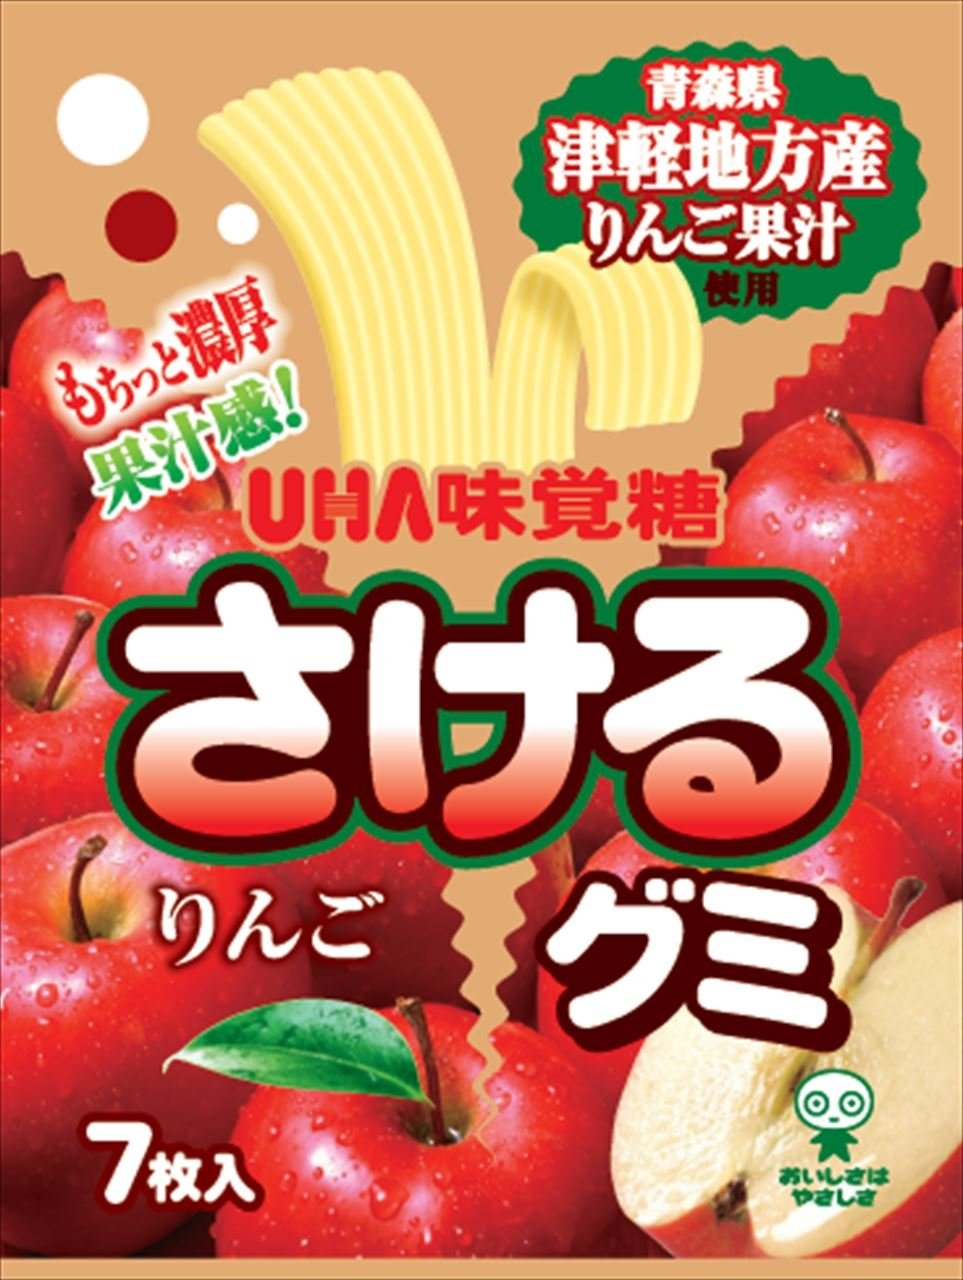 Fruit gum strips - apple 32.9g